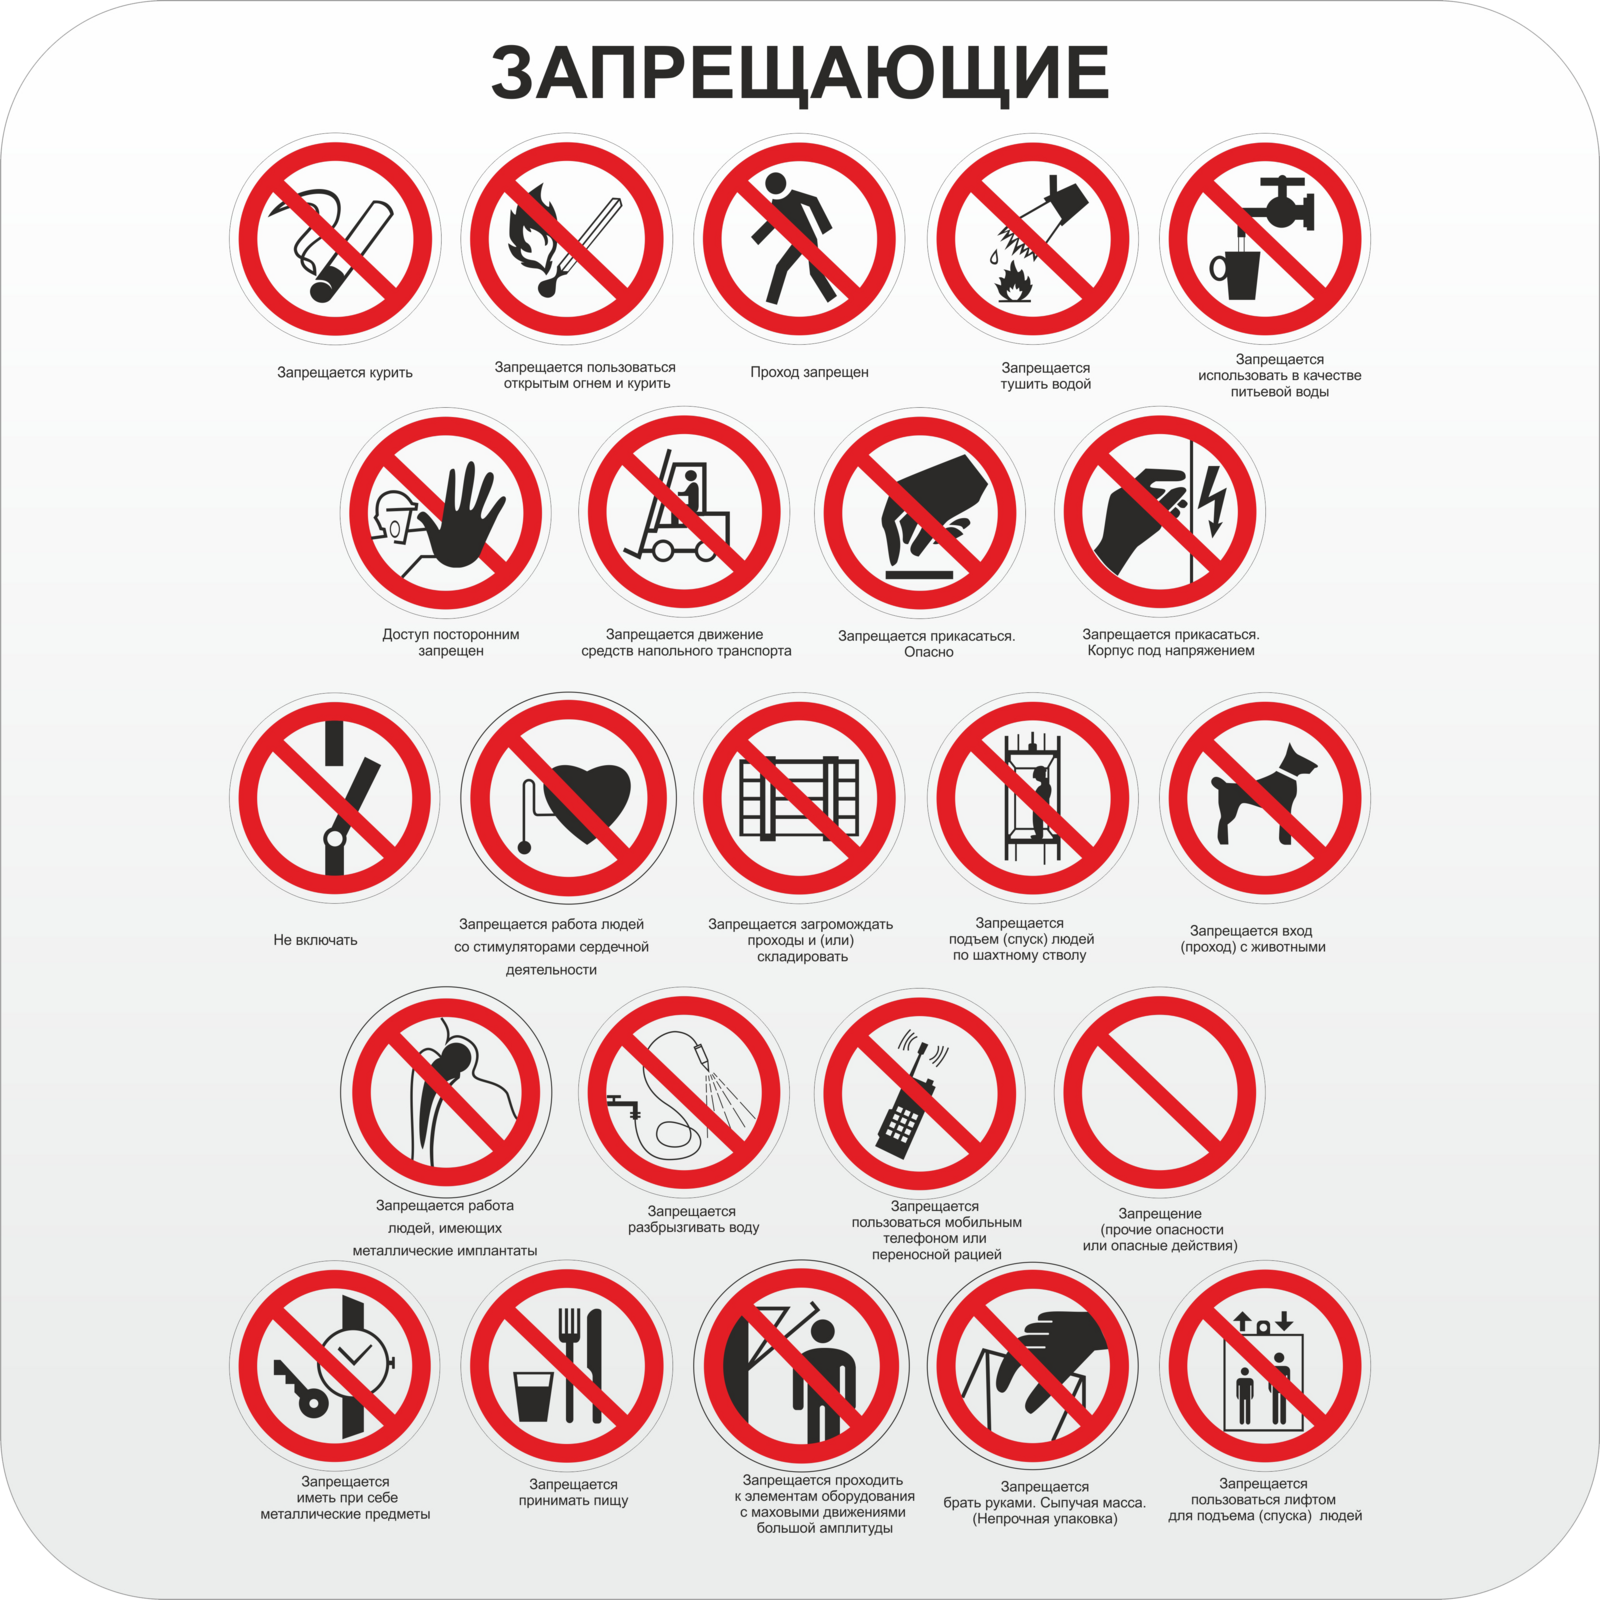 Запрет игр в россии. Запрещающие знаки. Запещающиезнаки. Хвперщающий знаки. Запрещающий круглый знак.